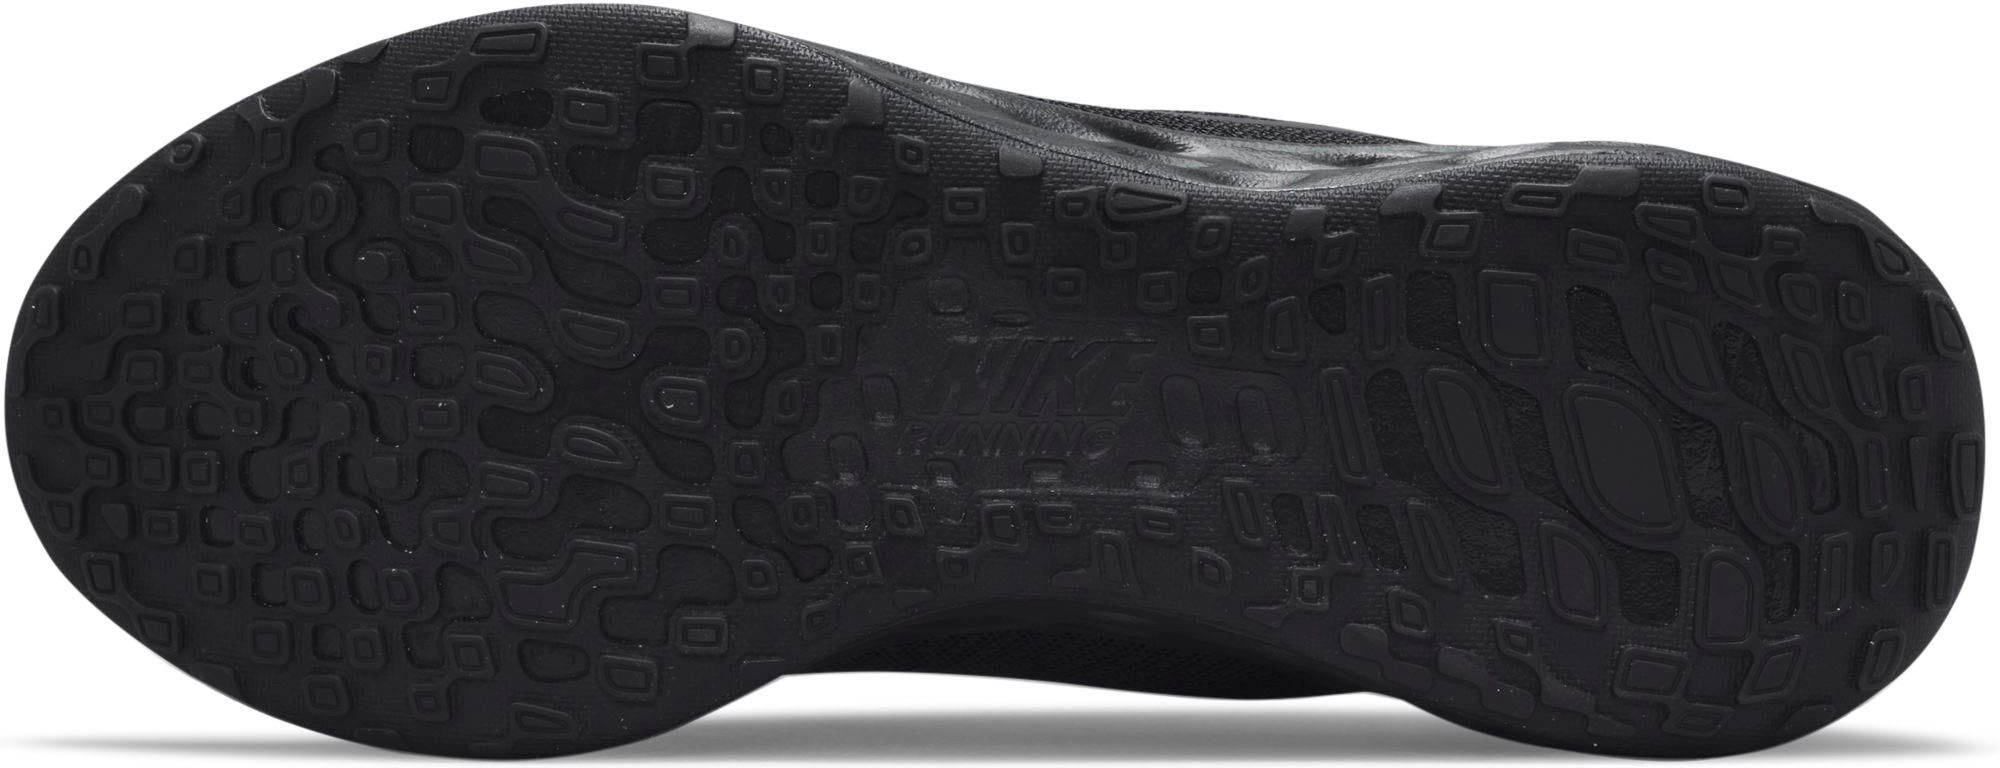 Laufschuh 6 schwarz NEXT Nike NATURE REVOLUTION